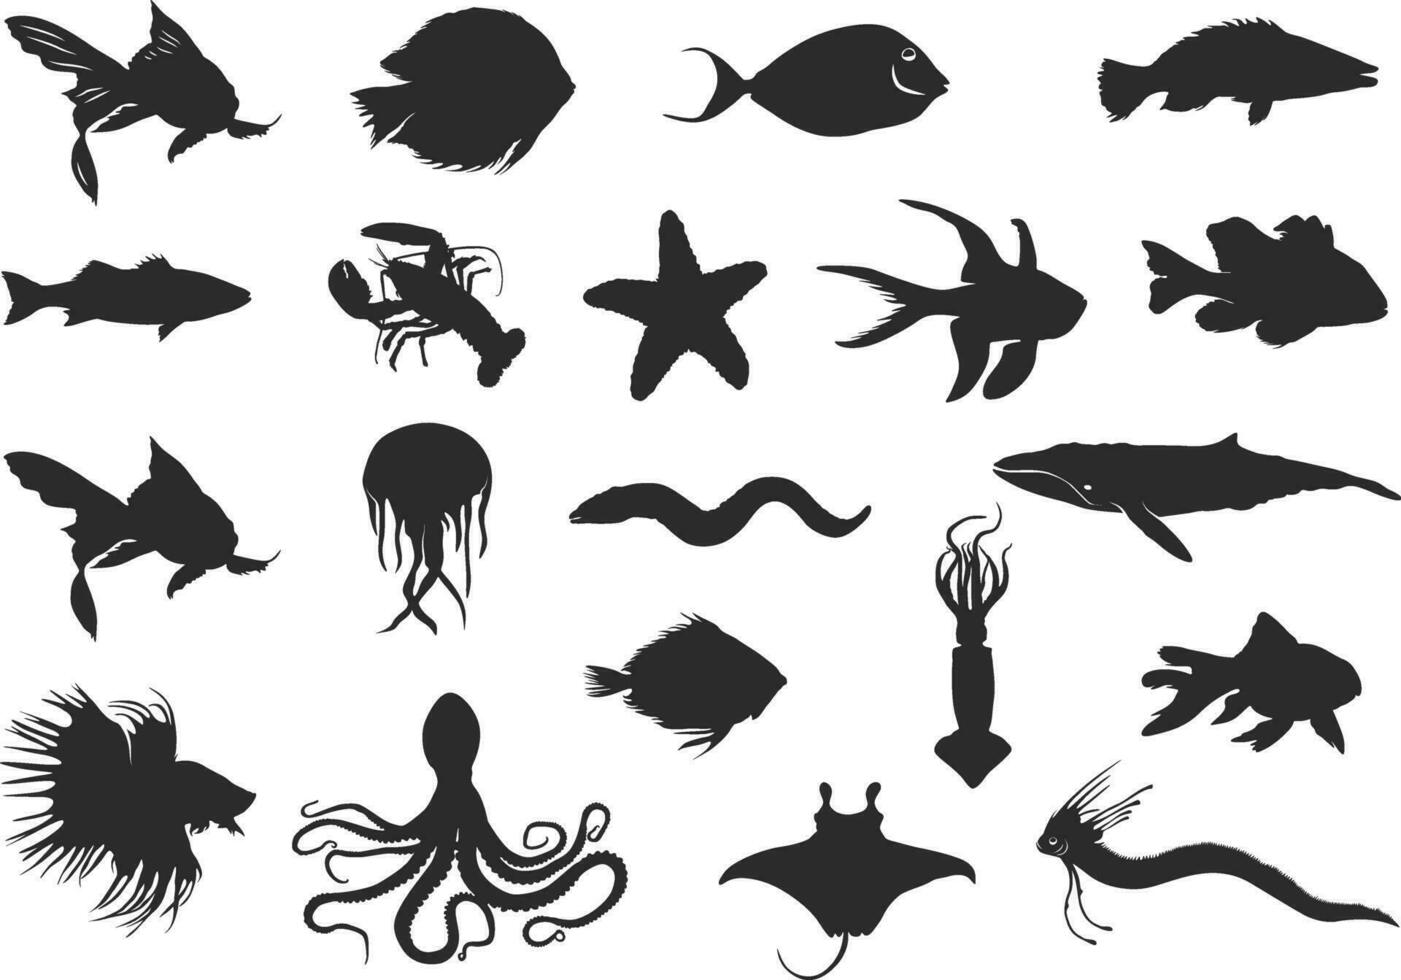 Sea fish silhouette, Fish clipart, Fish silhouette, Saltwater fish silhouette, Ocean fish silhouette, Sea fish vector. vector